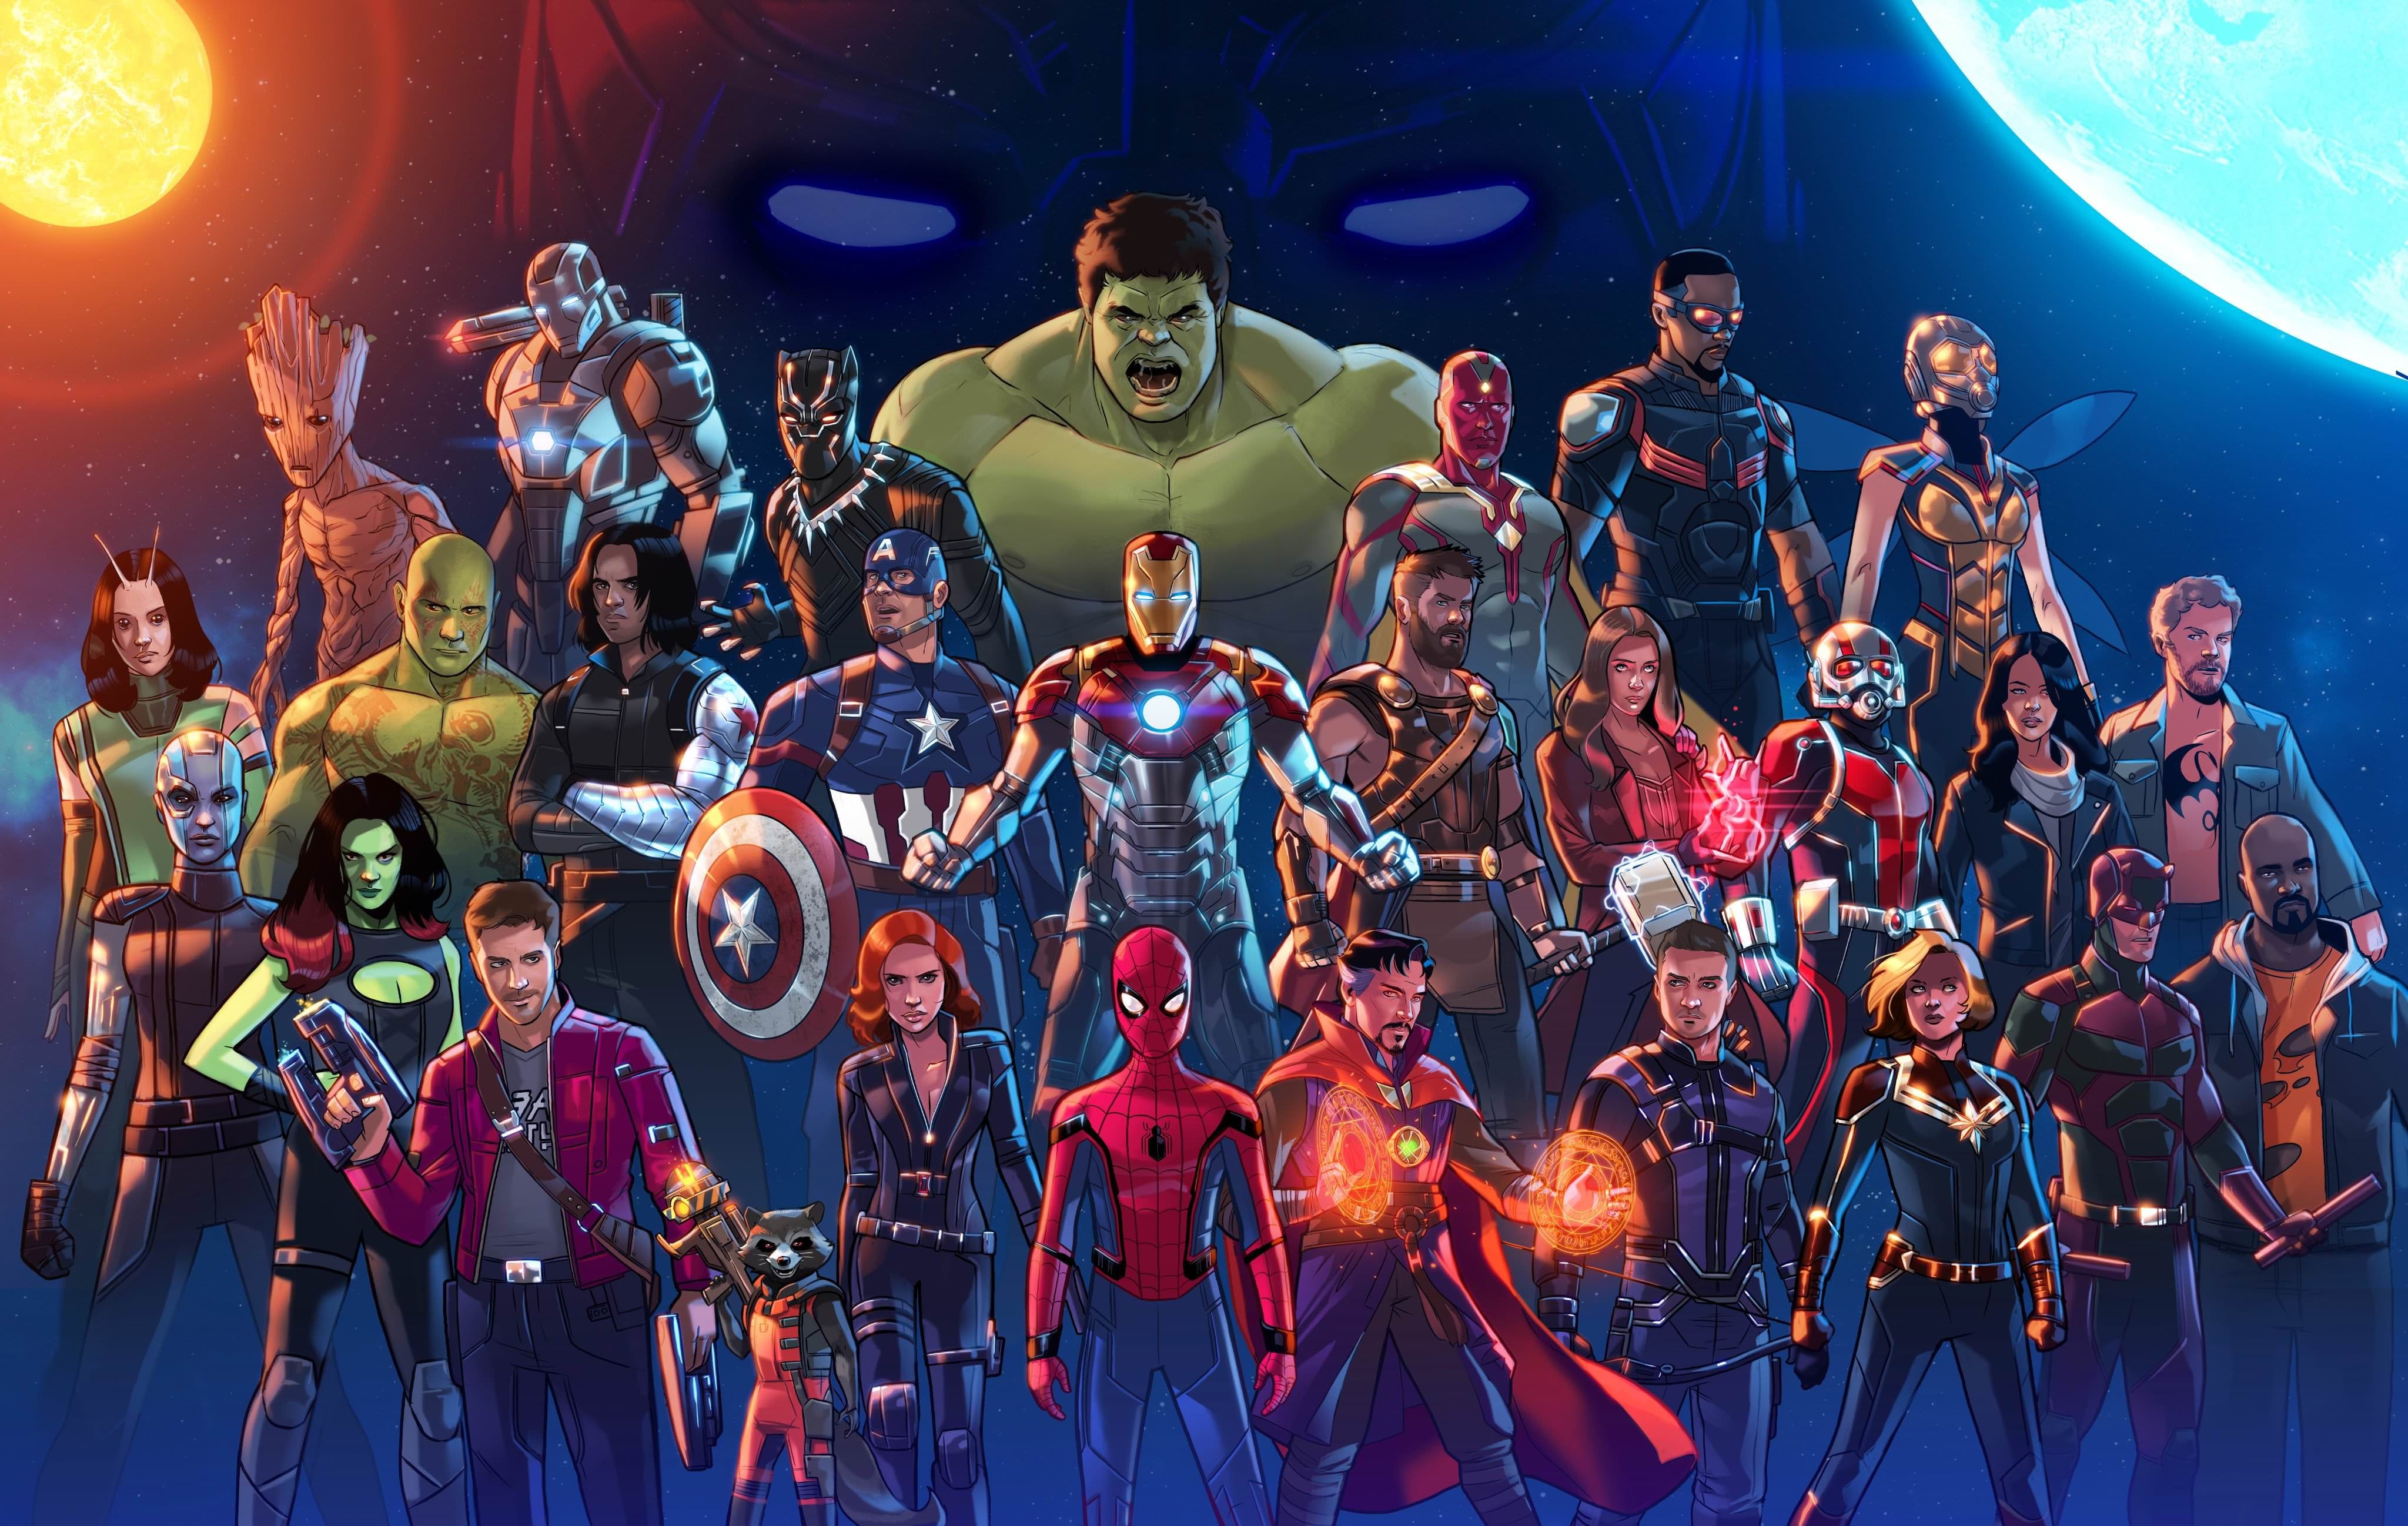 Bạn có muốn tận hưởng những hình nền lấy cảm hứng từ các siêu anh hùng Marvel không? Hãy xem qua bộ sưu tập hình nền Anh hùng và Ác nhân trong Vũ trụ Điện ảnh Marvel này. Bấm vào hình ảnh để khám phá!